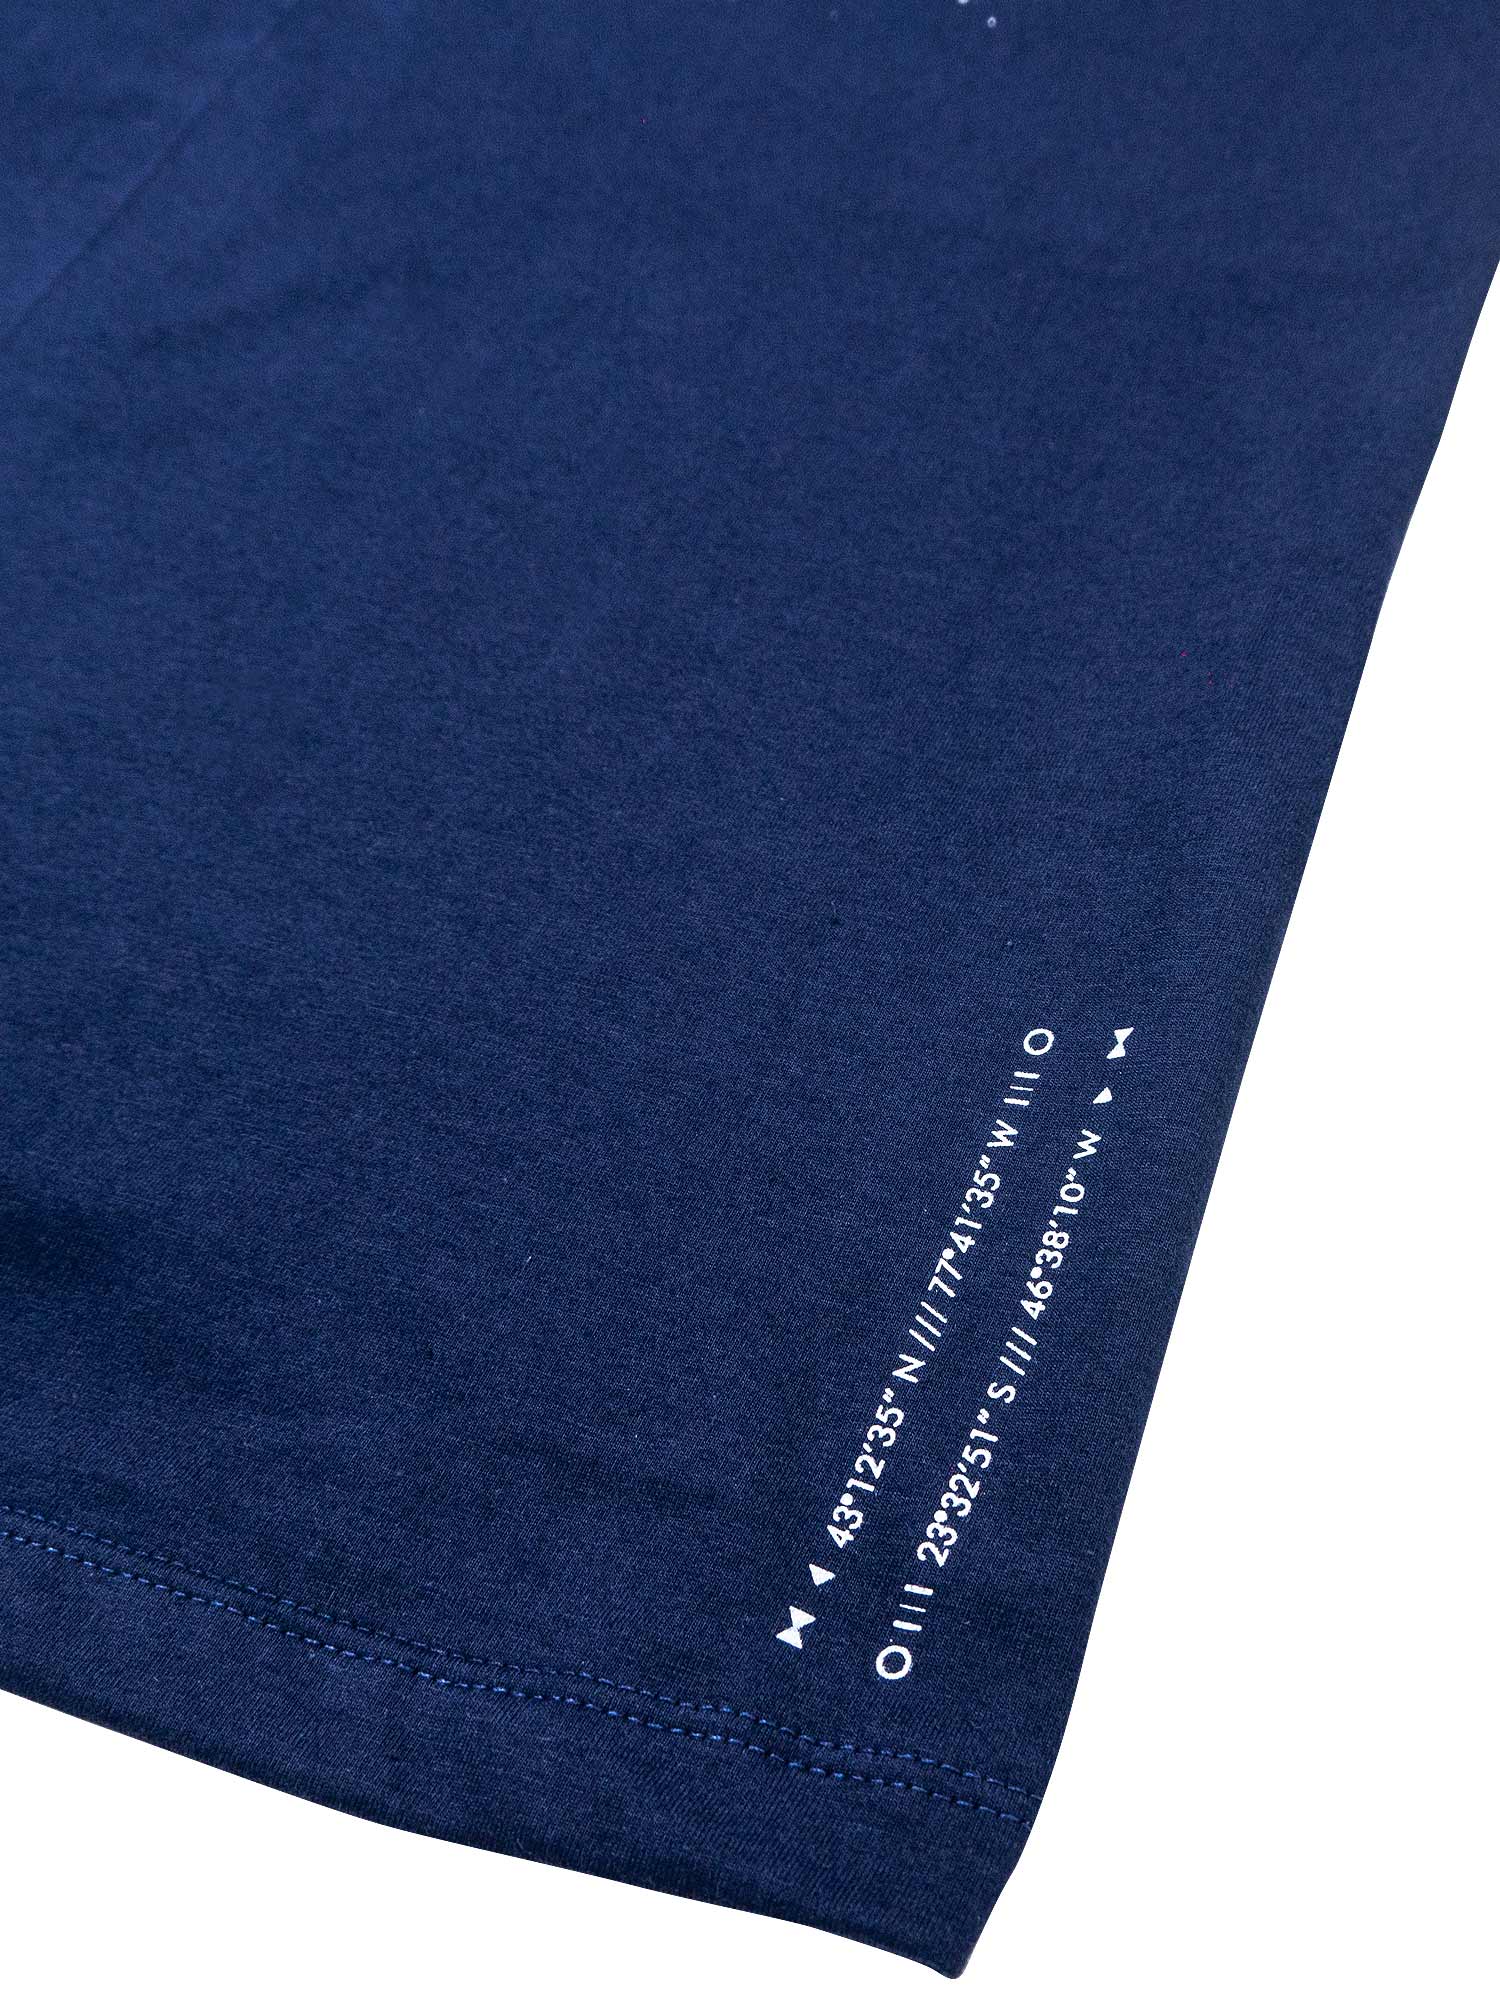 Camiseta-Future-Mycrocosmos-Azul-Marinho-Costas-Close-Coordenadas